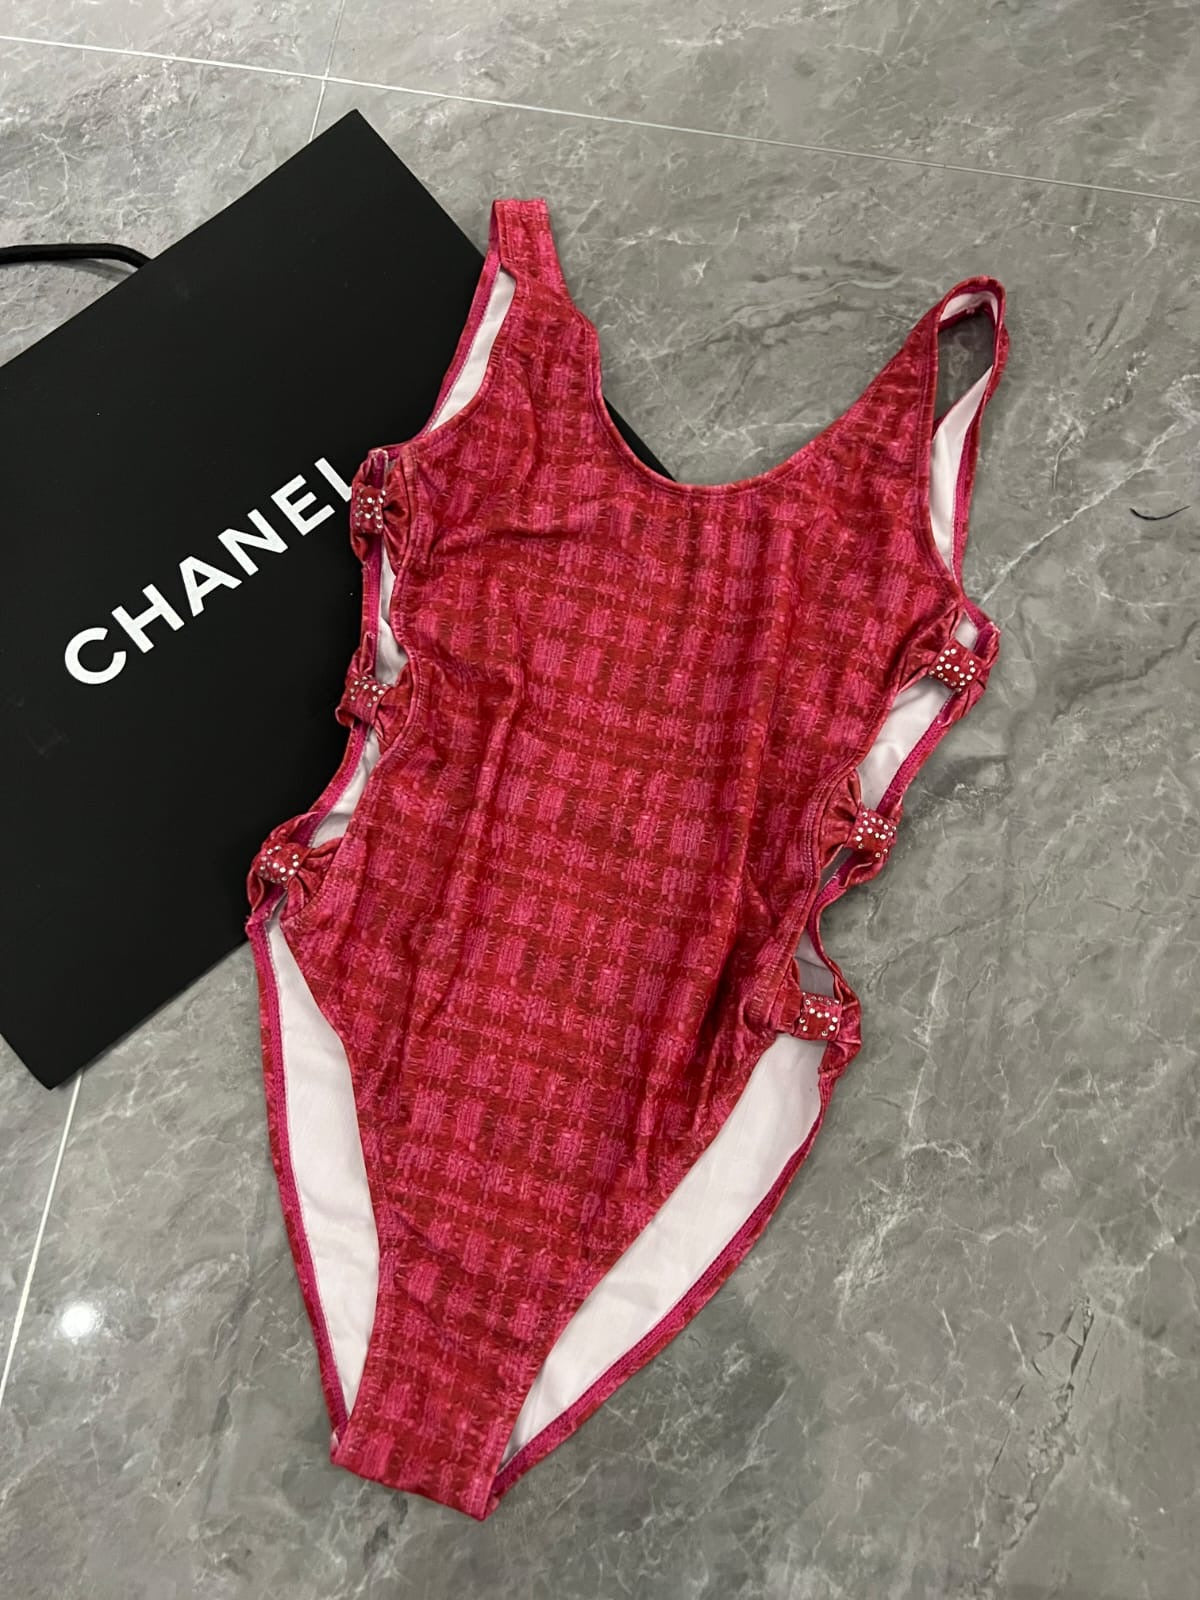 Chanel Swimwear Set